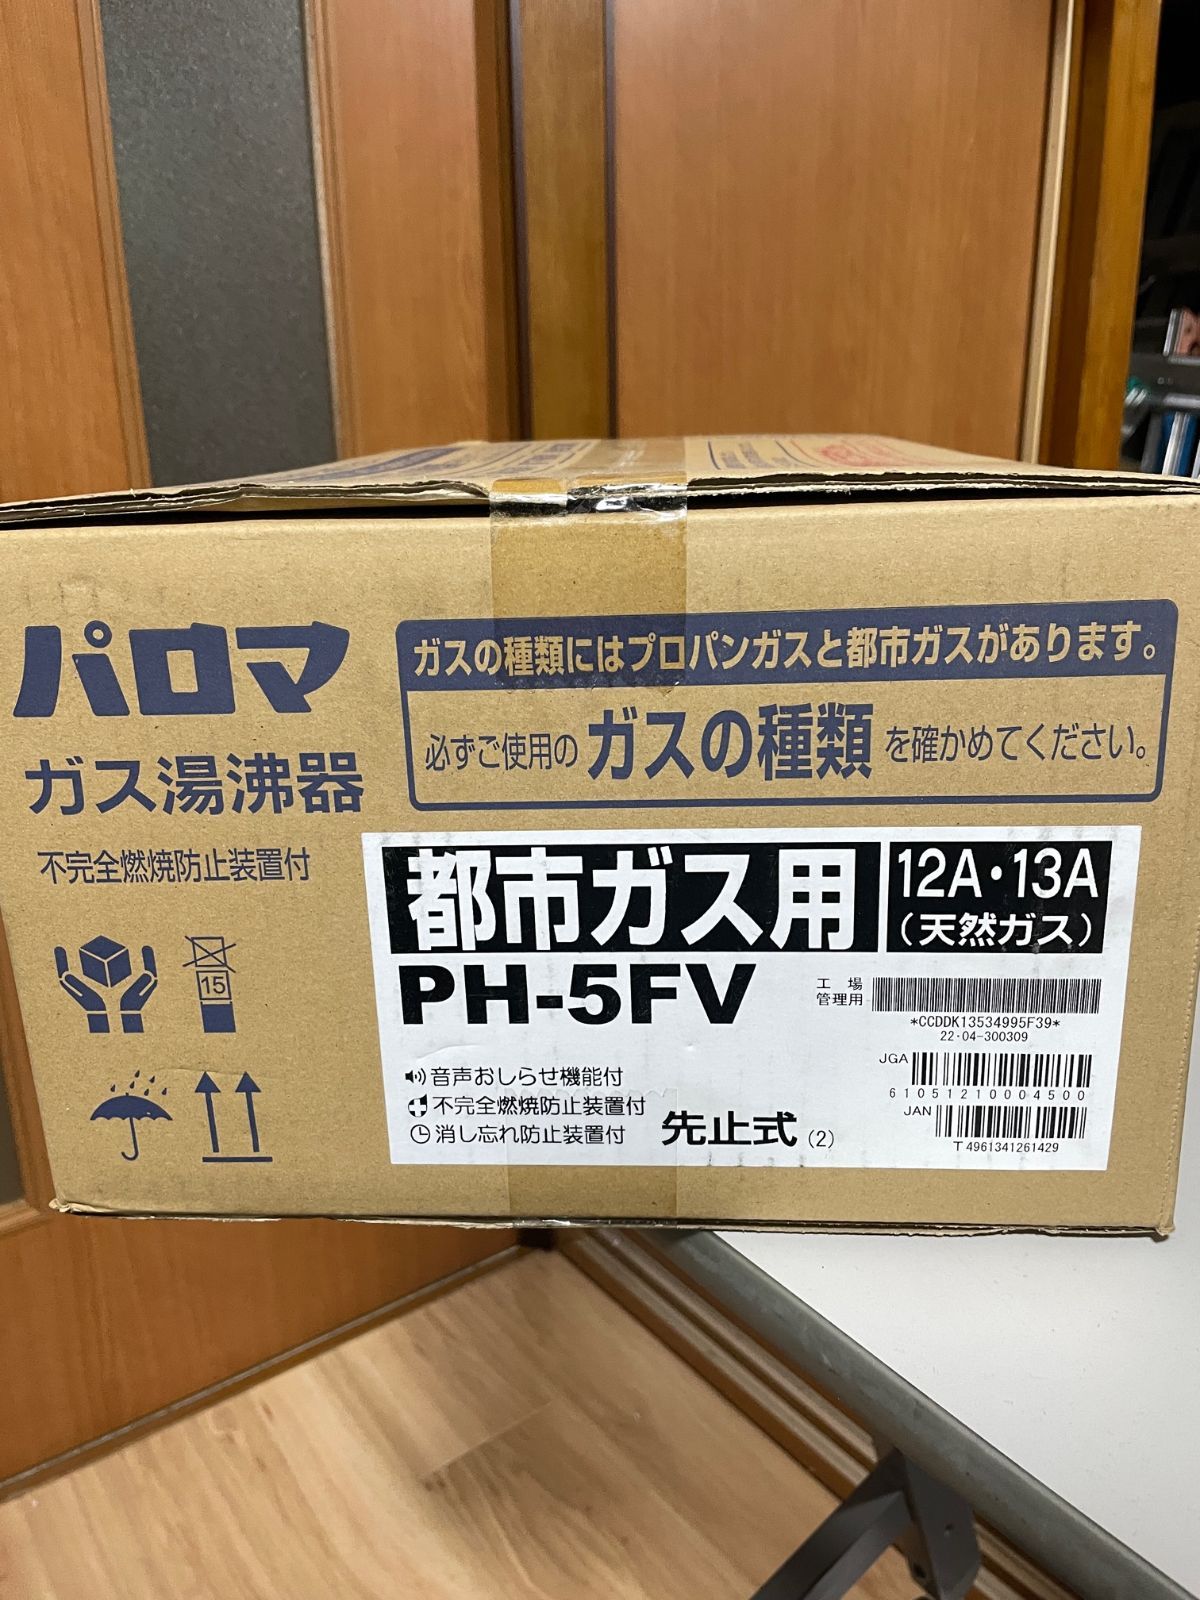 パロマ製小型湯沸かし器PH-5FV【都市ガス用】 リバイバルライフ メルカリ